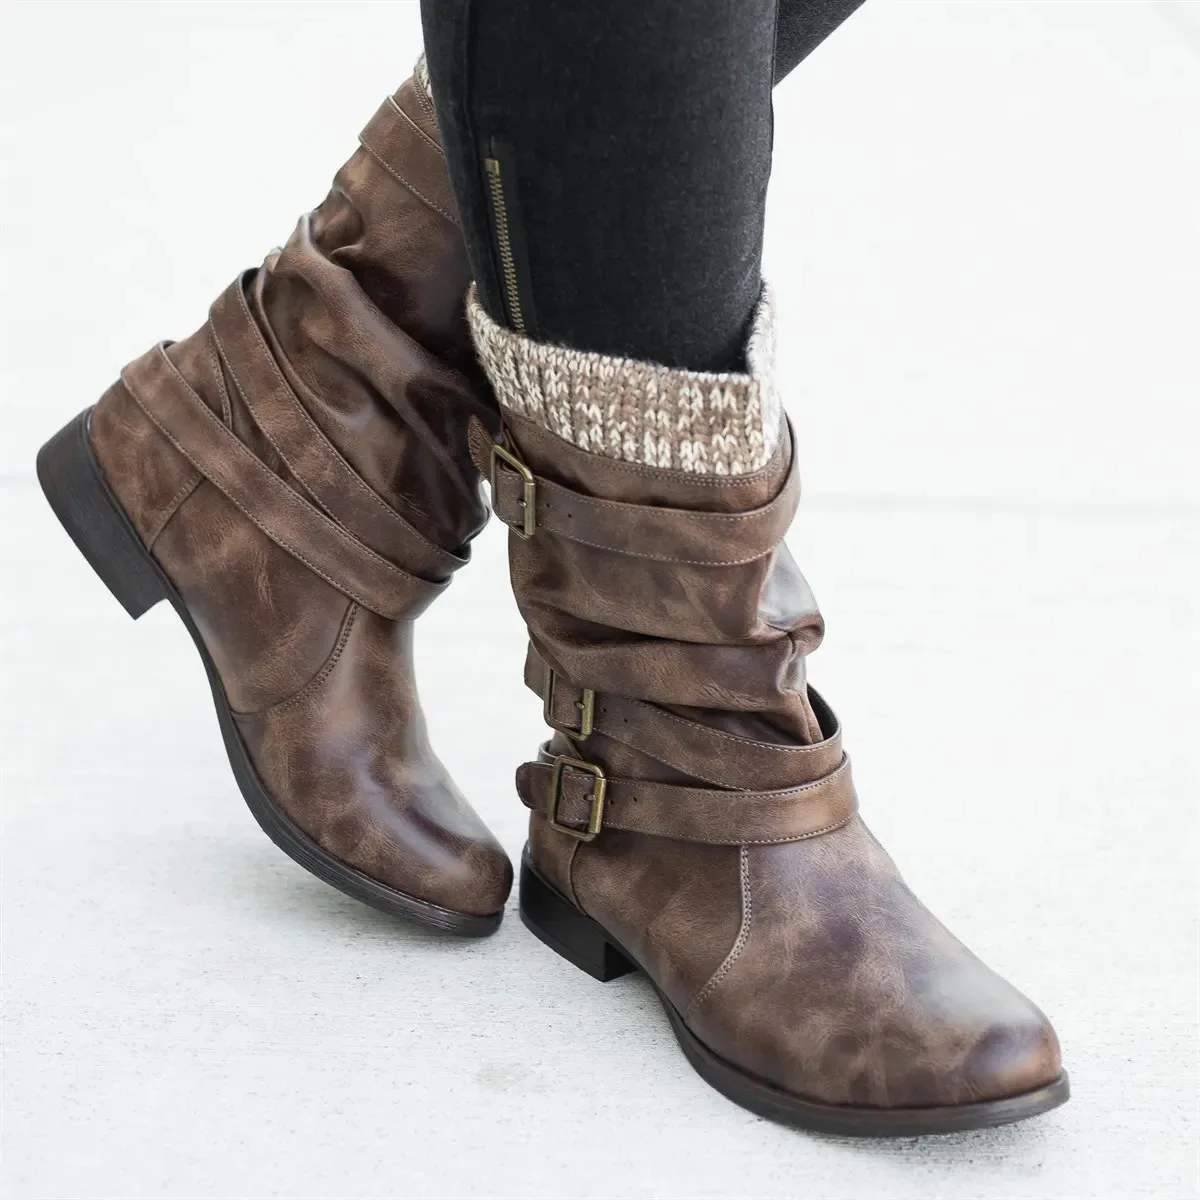 LOOZYKIT/зимняя обувь; женские ботинки; Новинка года; ботинки из шерсти с пряжкой; однотонные кожаные ботинки до середины икры на толстом высоком каблуке; теплая женская обувь